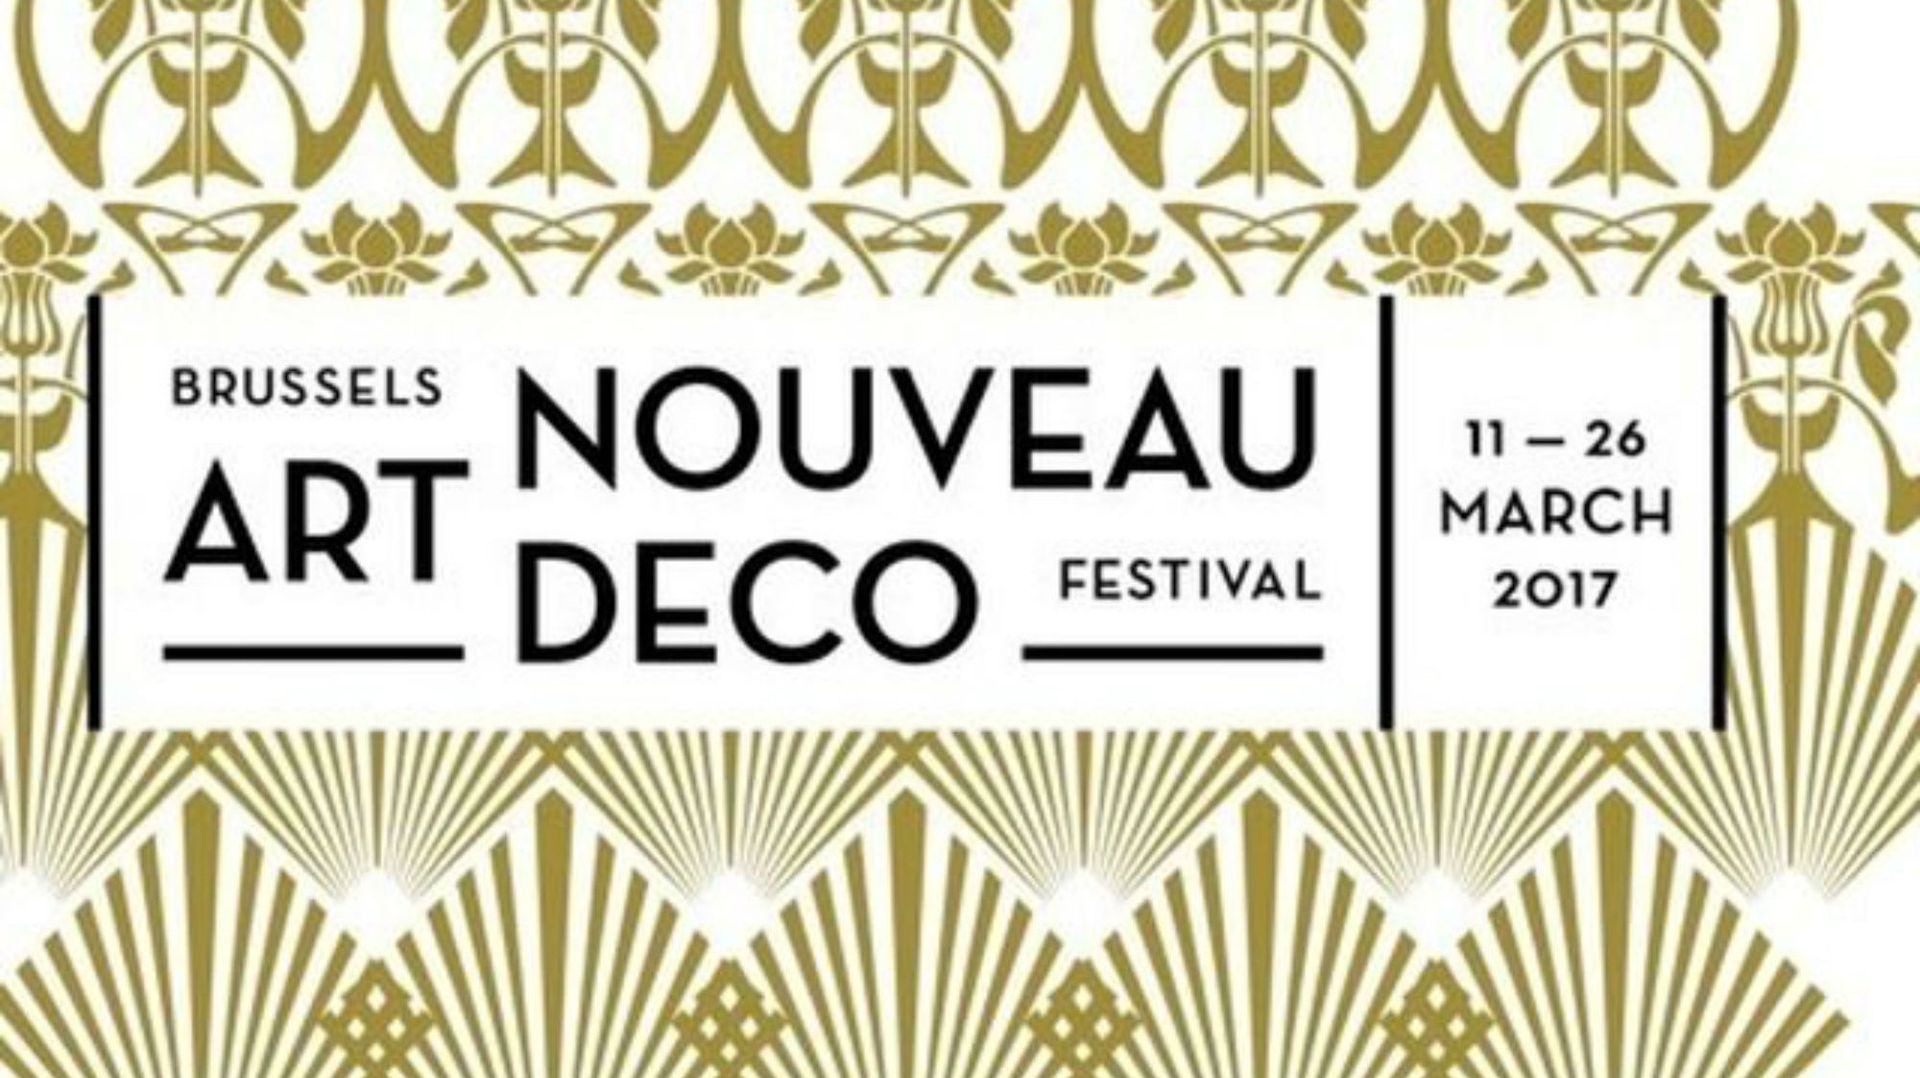 La première édition du Festival de l'Art Nouveau et de l'Art Déco se tiendra du 11 au 26 mars